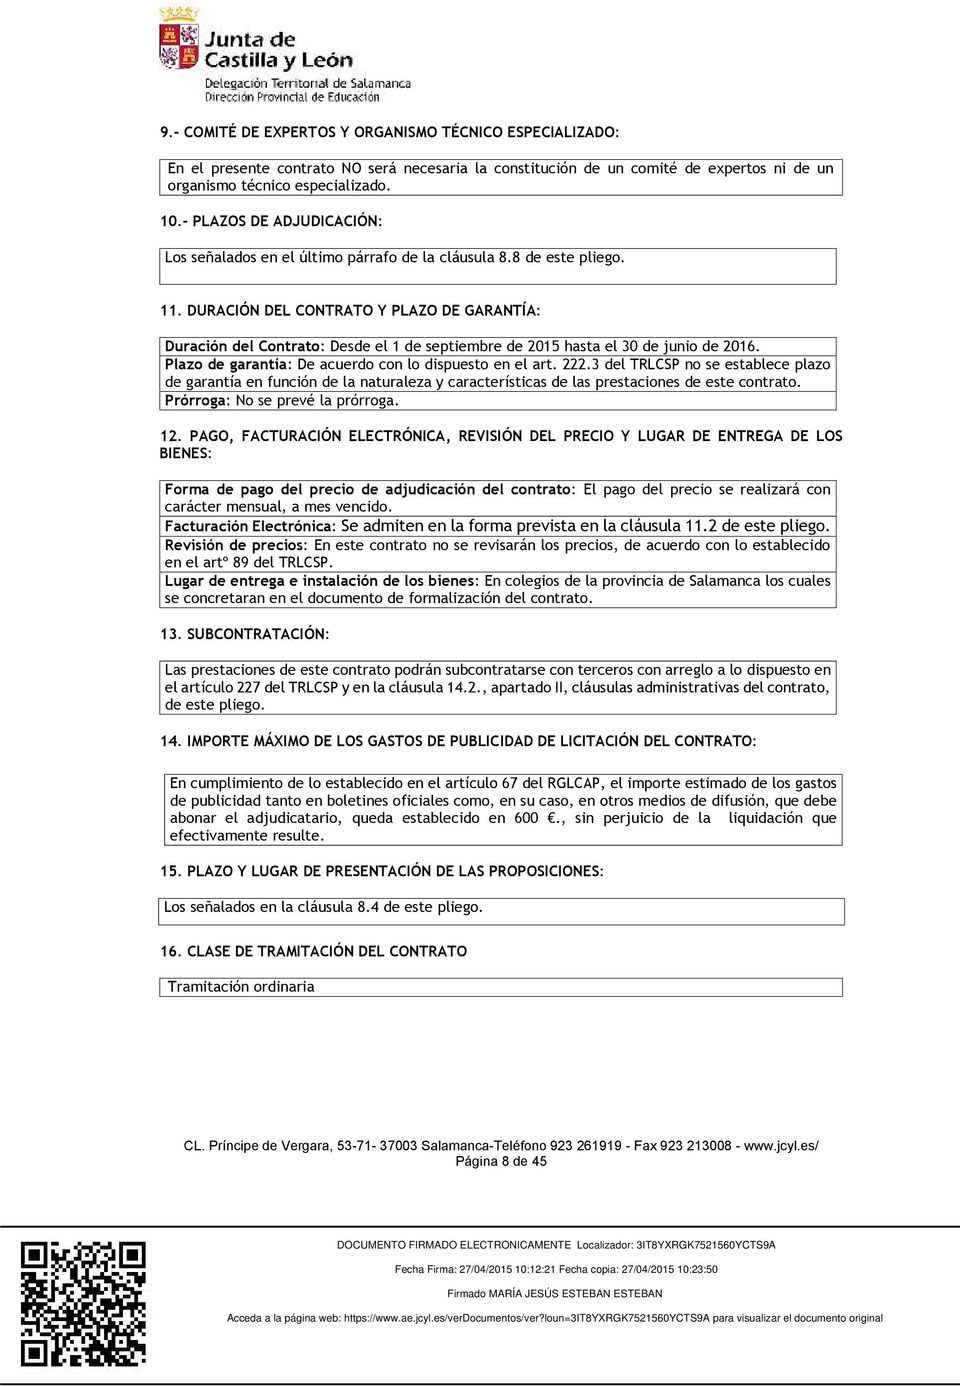 DURACIÓN DEL CONTRATO Y PLAZO DE GARANTÍA: Duración del Contrato: Desde el 1 de septiembre de 2015 hasta el 30 de junio de 2016. Plazo de garantía: De acuerdo con lo dispuesto en el art. 222.